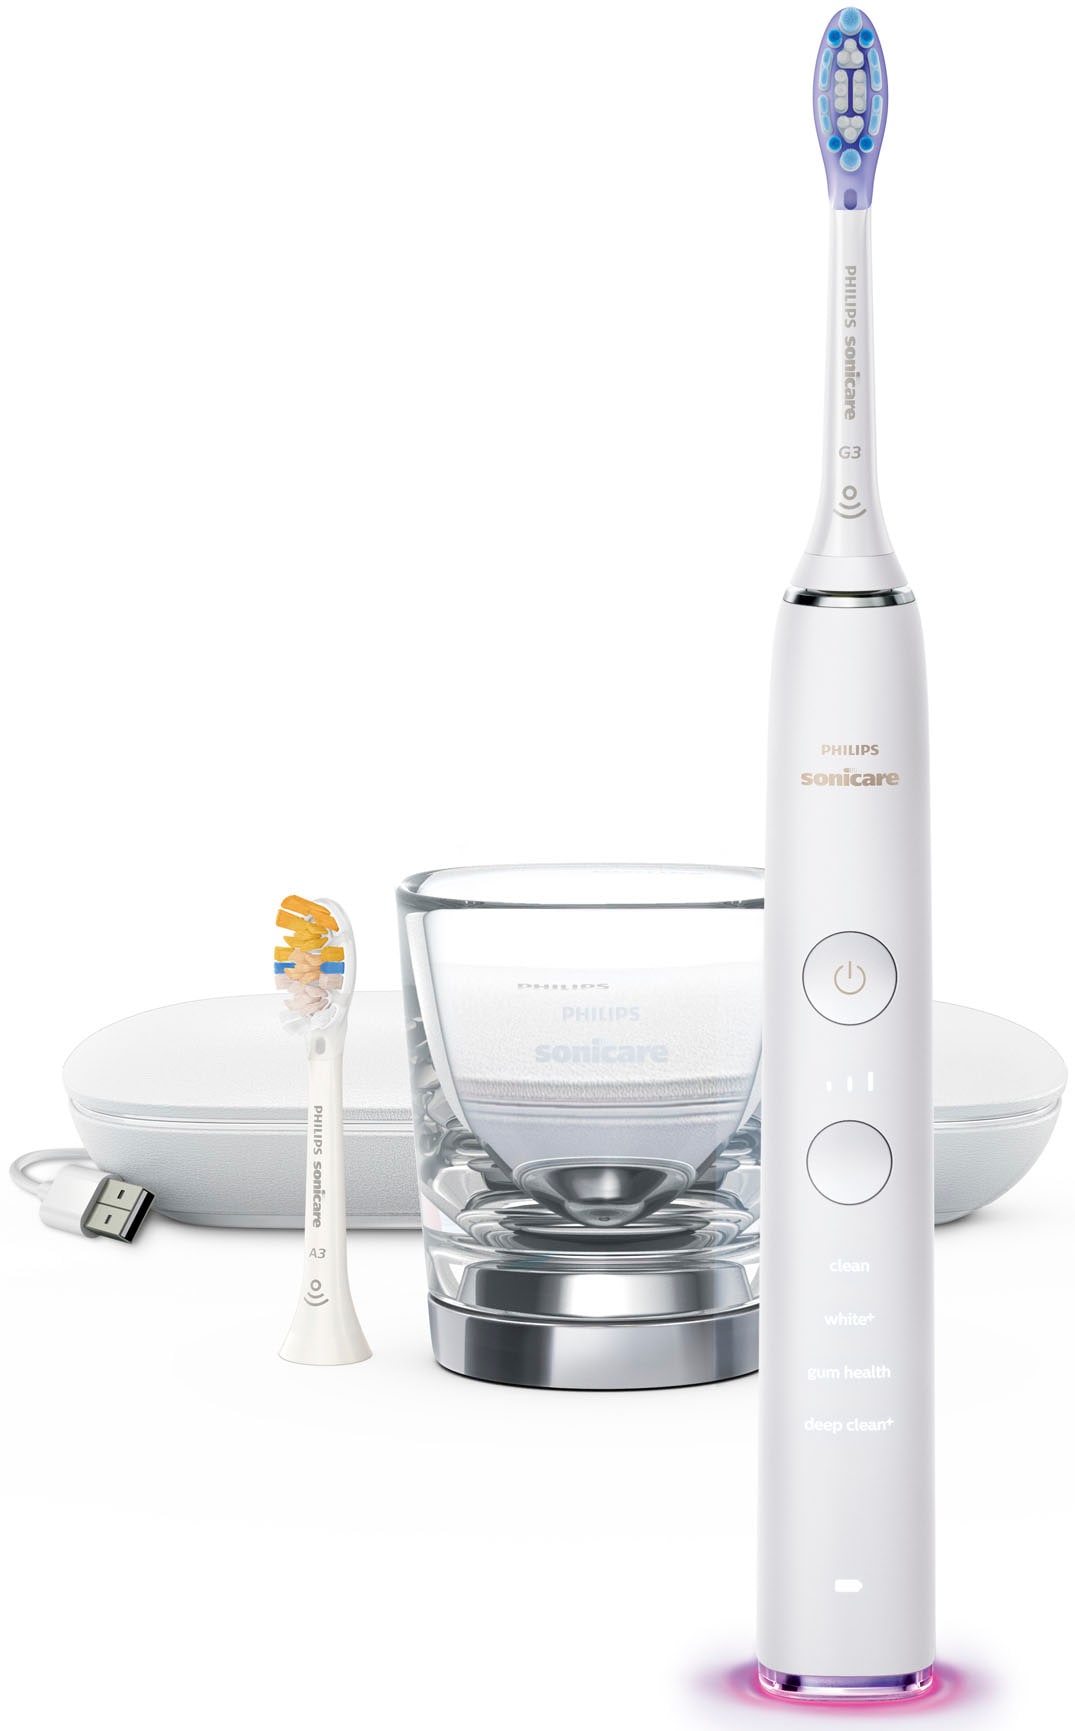 Philips Sonicare Elektrische Zahnbürste »DiamondClean 9400, HX9917«, 2 St. Aufsteckbürsten, mit integriertem Drücksensor, 4 Putzprogramme und 3 Intensitätsstufen